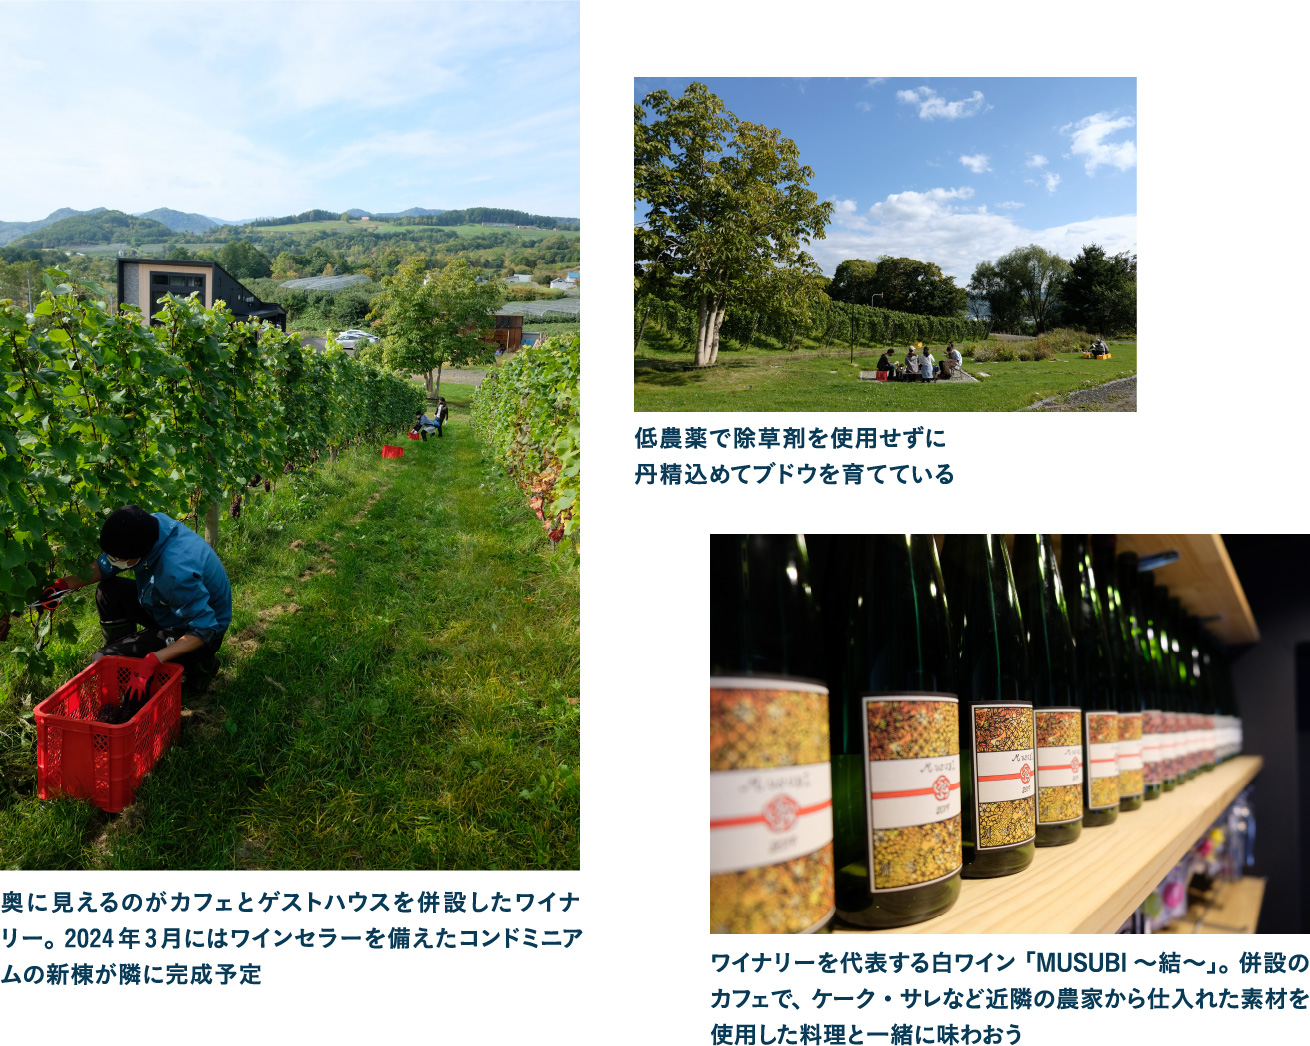 新進気鋭のワイナリーDomaine Blessで仁木町のワインの歴史やこだわりを学ぶ